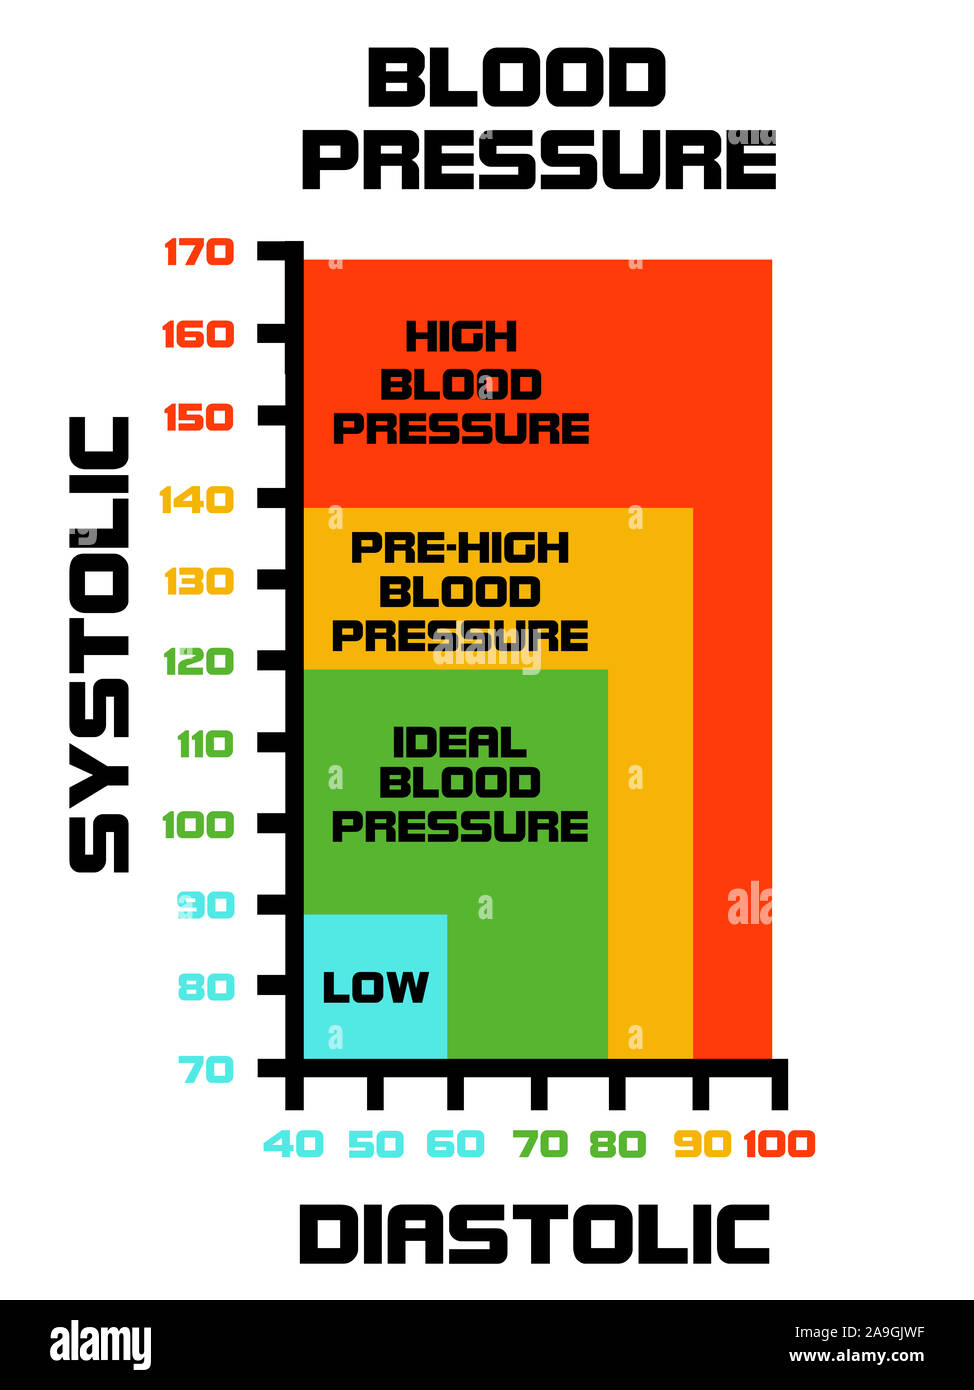 Le diagramme indique les bonnes et les mauvaises valeurs de pression artérielle. L'hypertension est appelé le tueur silencieux et c'est vraiment dangereux Banque D'Images